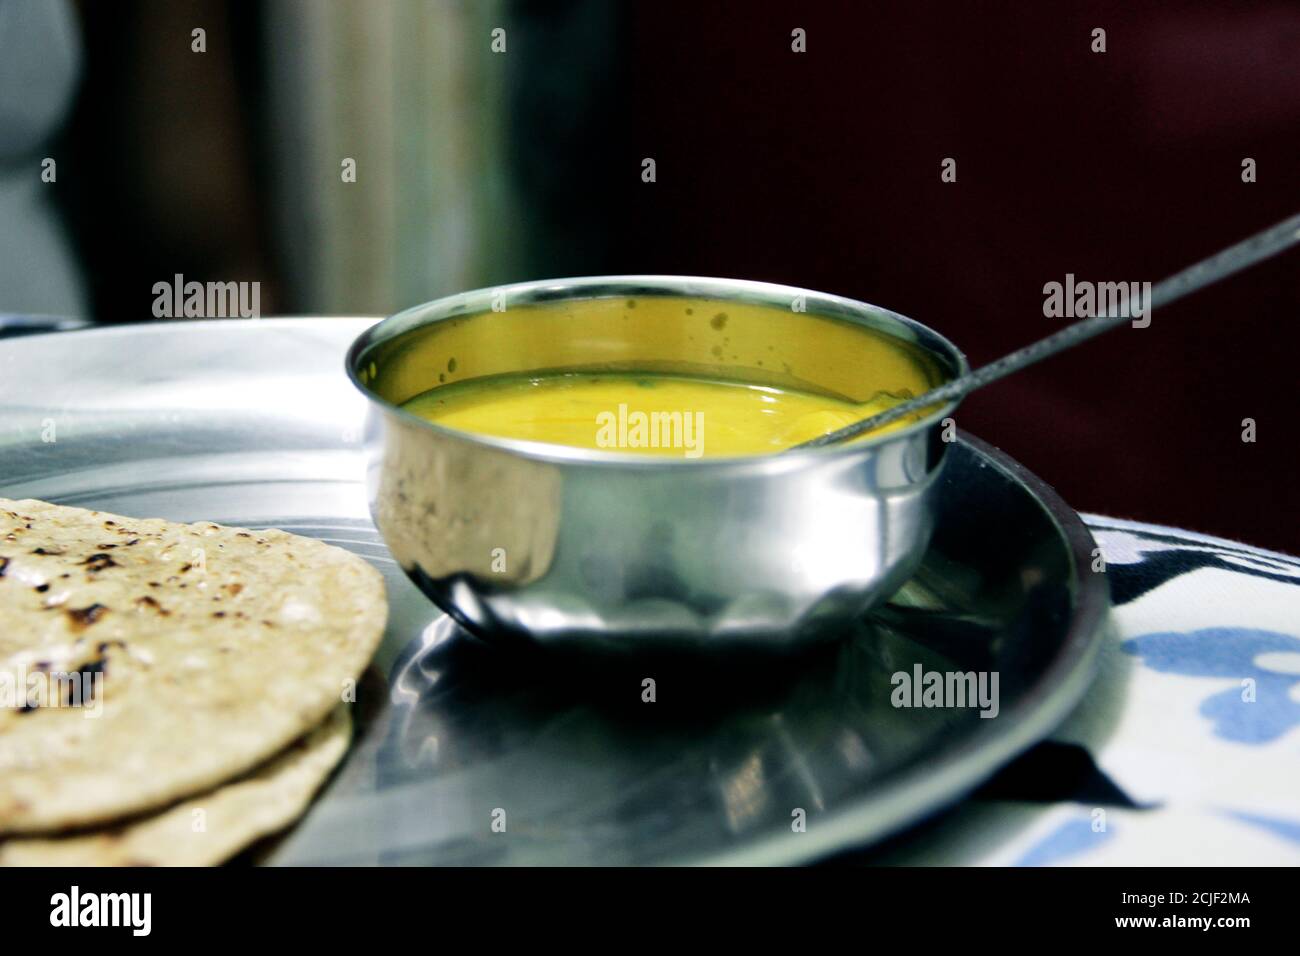 Cuisine indienne Kadhi - Curry végétarien à base de lait de beurre et de farine de poulet. Servi dans un bol Banque D'Images